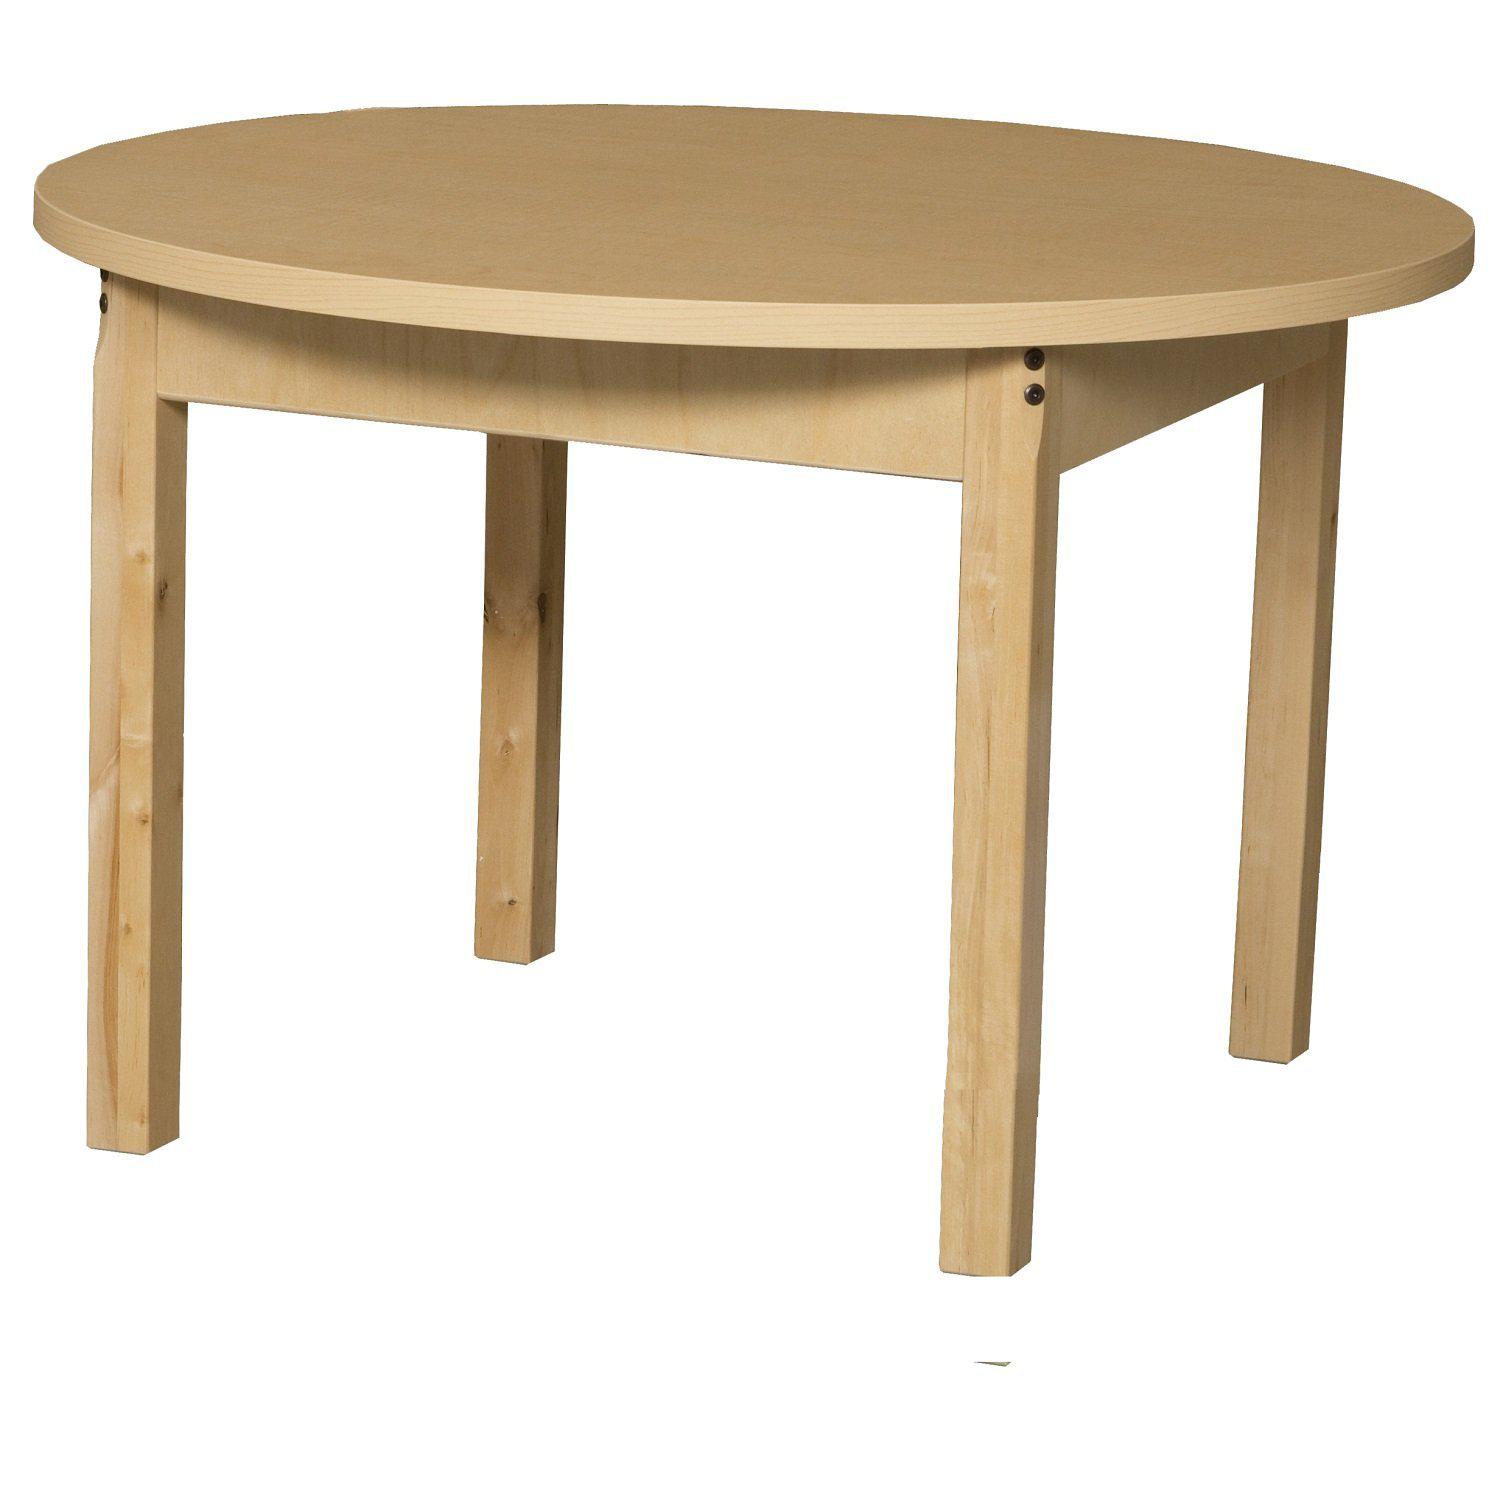 Pre-School Tables